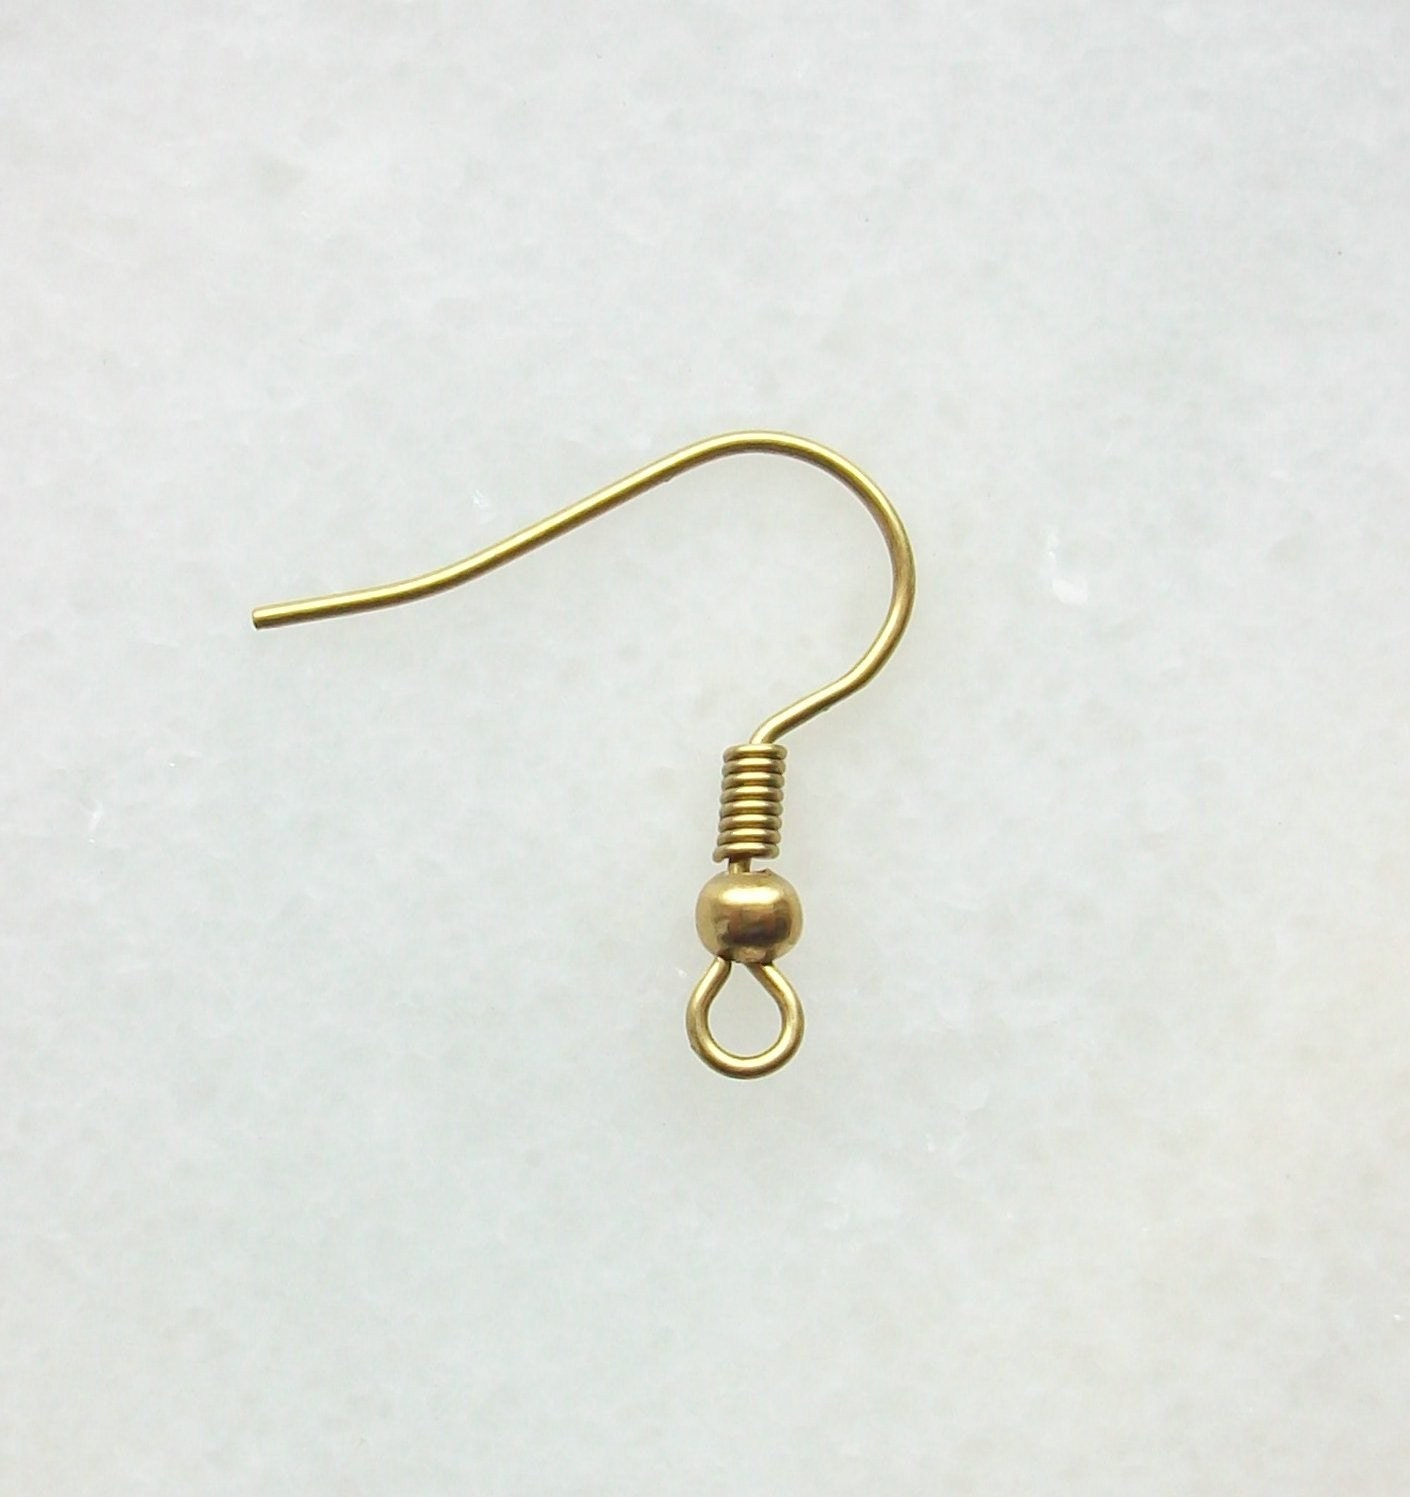 French Hook Earring